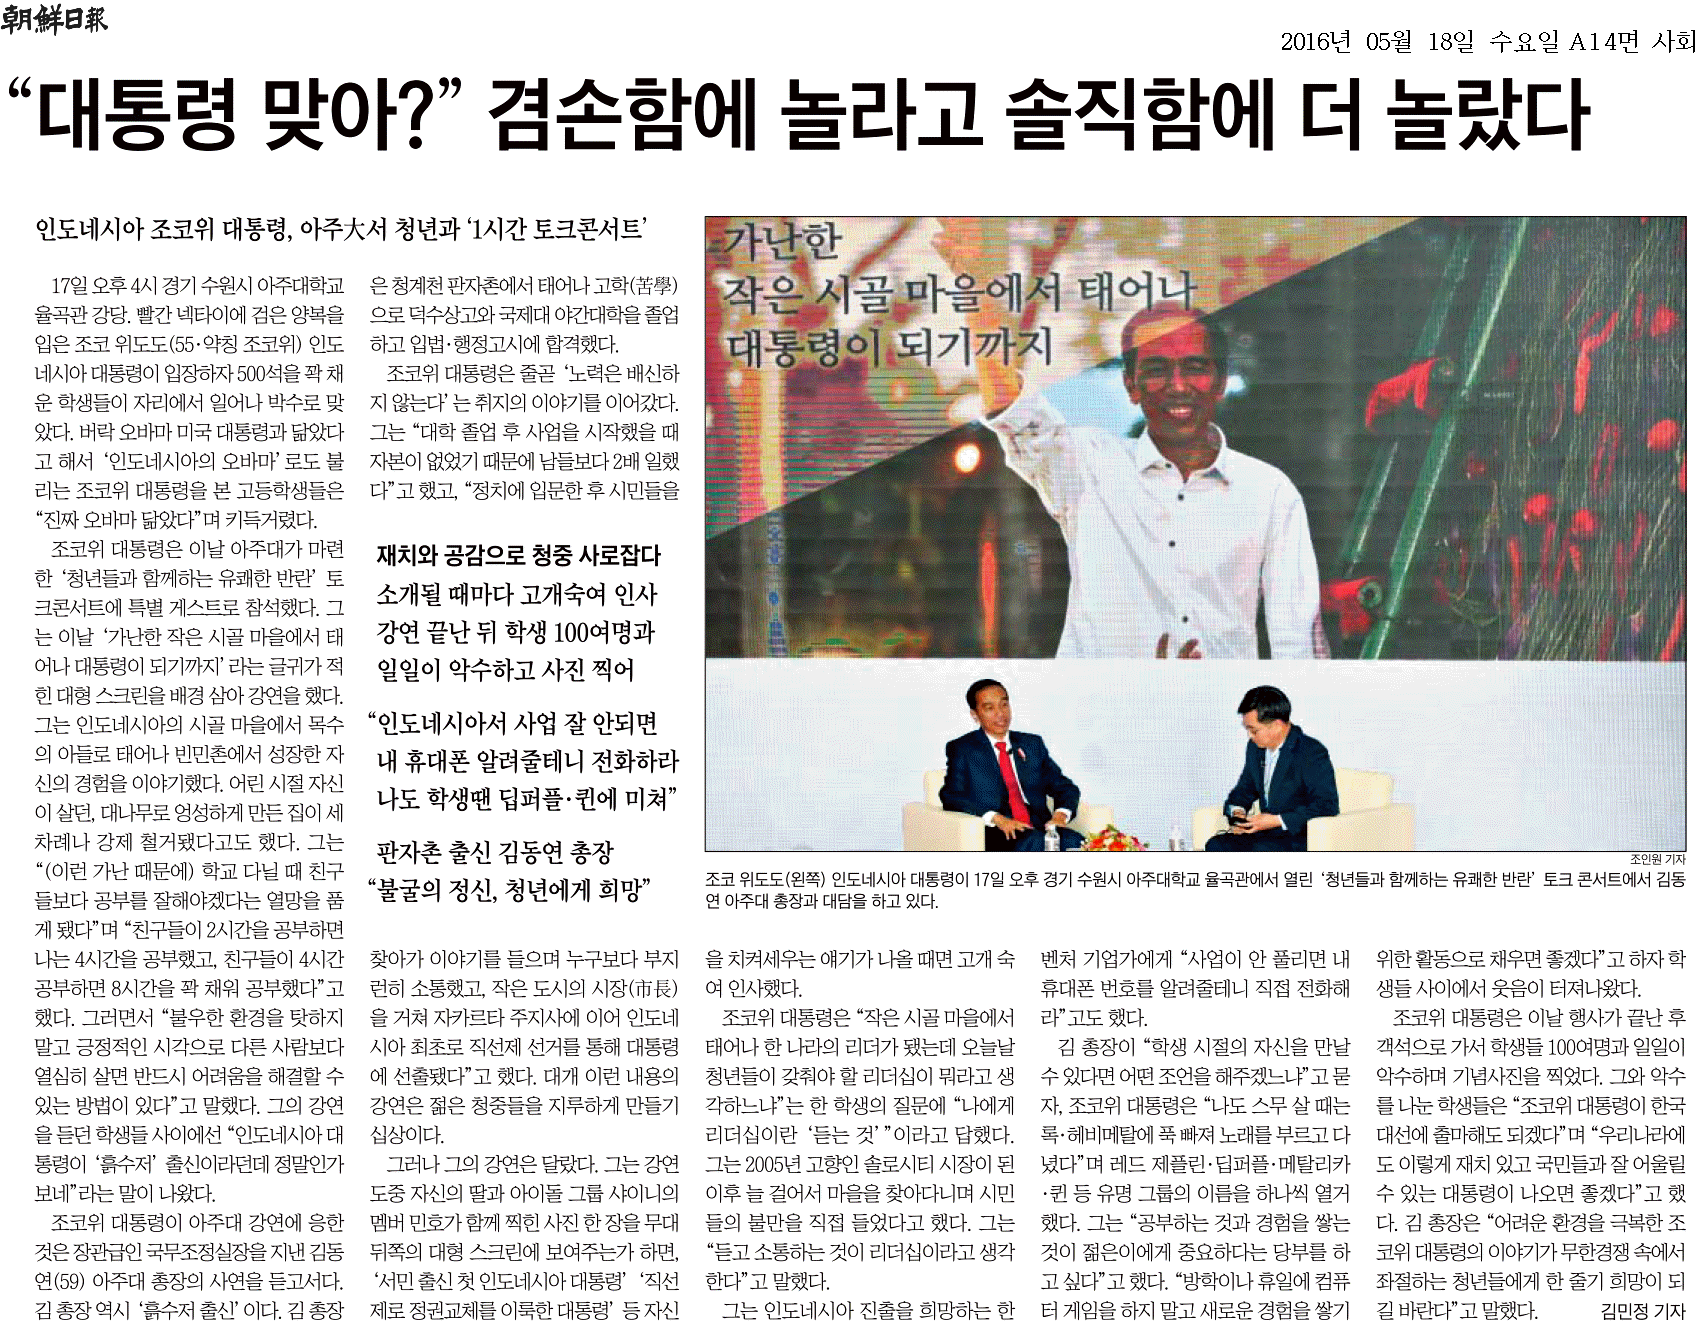 [16.05.18] 인니 대통령-김동연 총장 토크 콘서트, 주요 언론에 보도